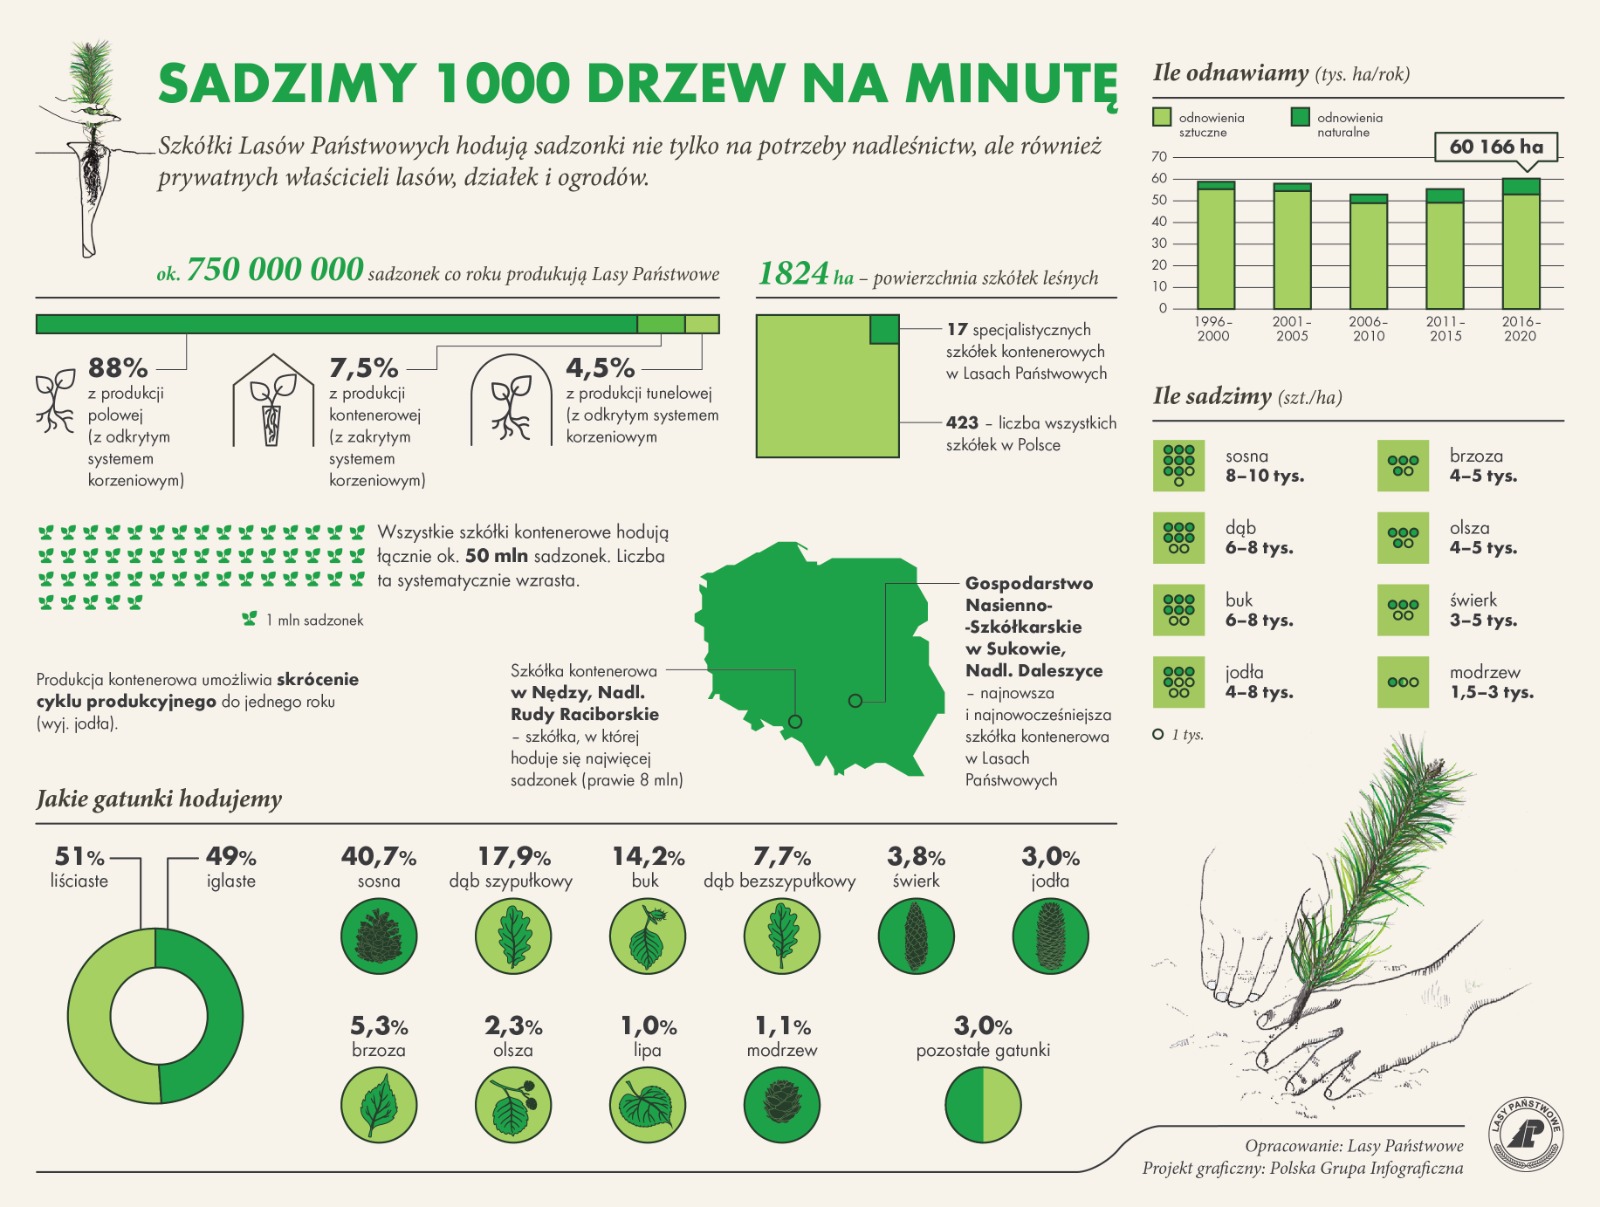 Infografika przedstawiająca informacje o ilości drzew sadzonych corocznie przez leśników - sadzimy 1000 drzew na minutę. Źródło Archiwum Lasów Państwowych